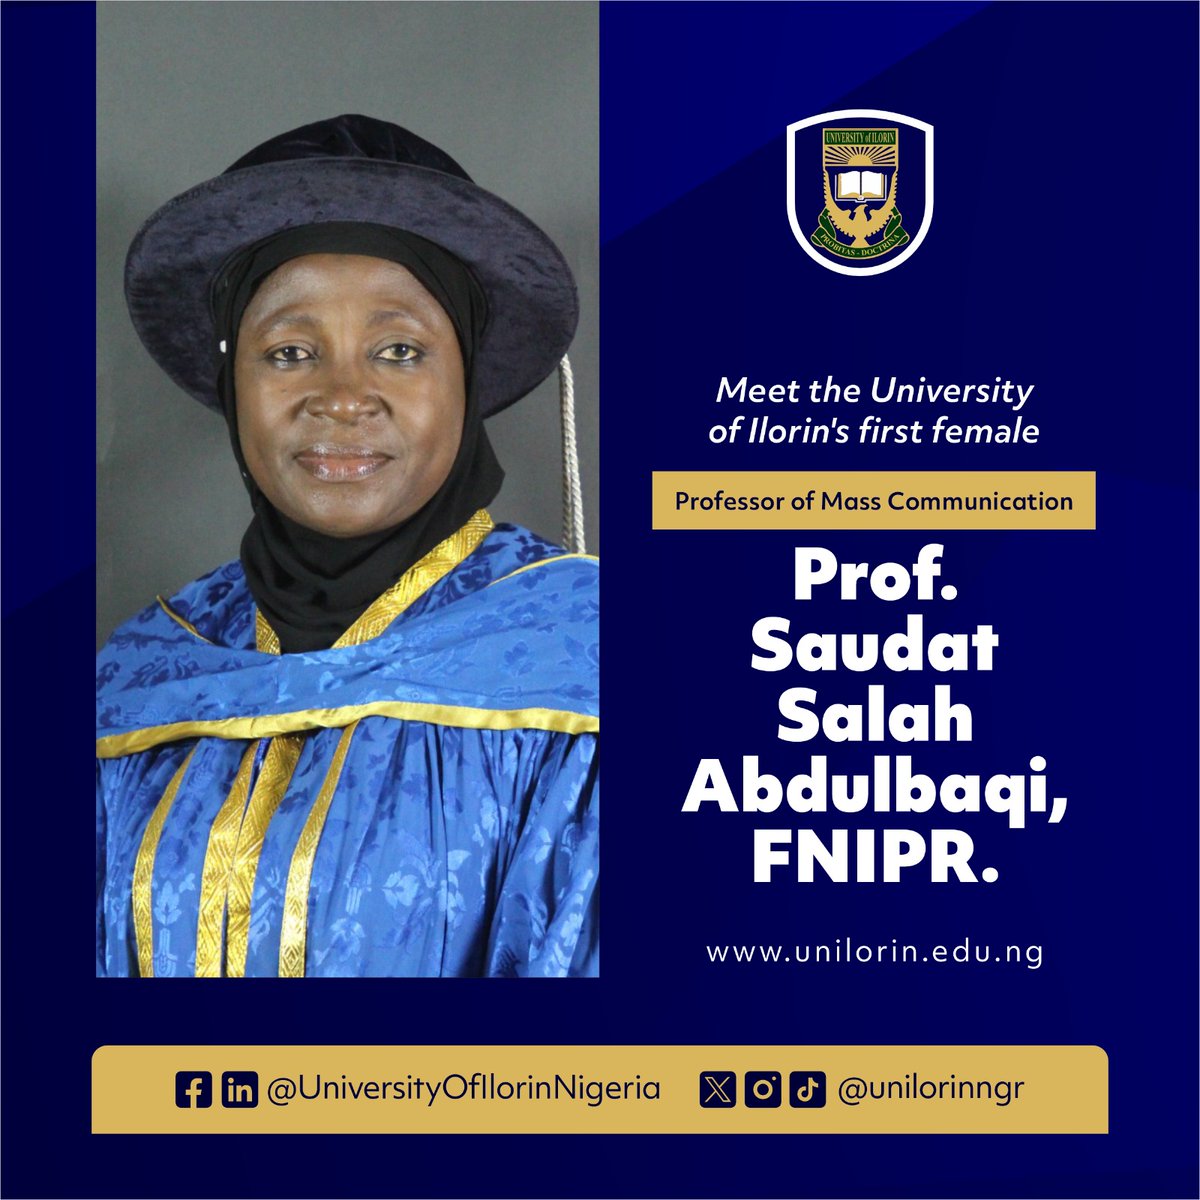 Meet Unilorin's first female professor of Mass Communication 
Prof. Saudat Salah A dulbaqi, FNIPR

#BetterByFar
#AcademicSuccess
@UnilorinNGR